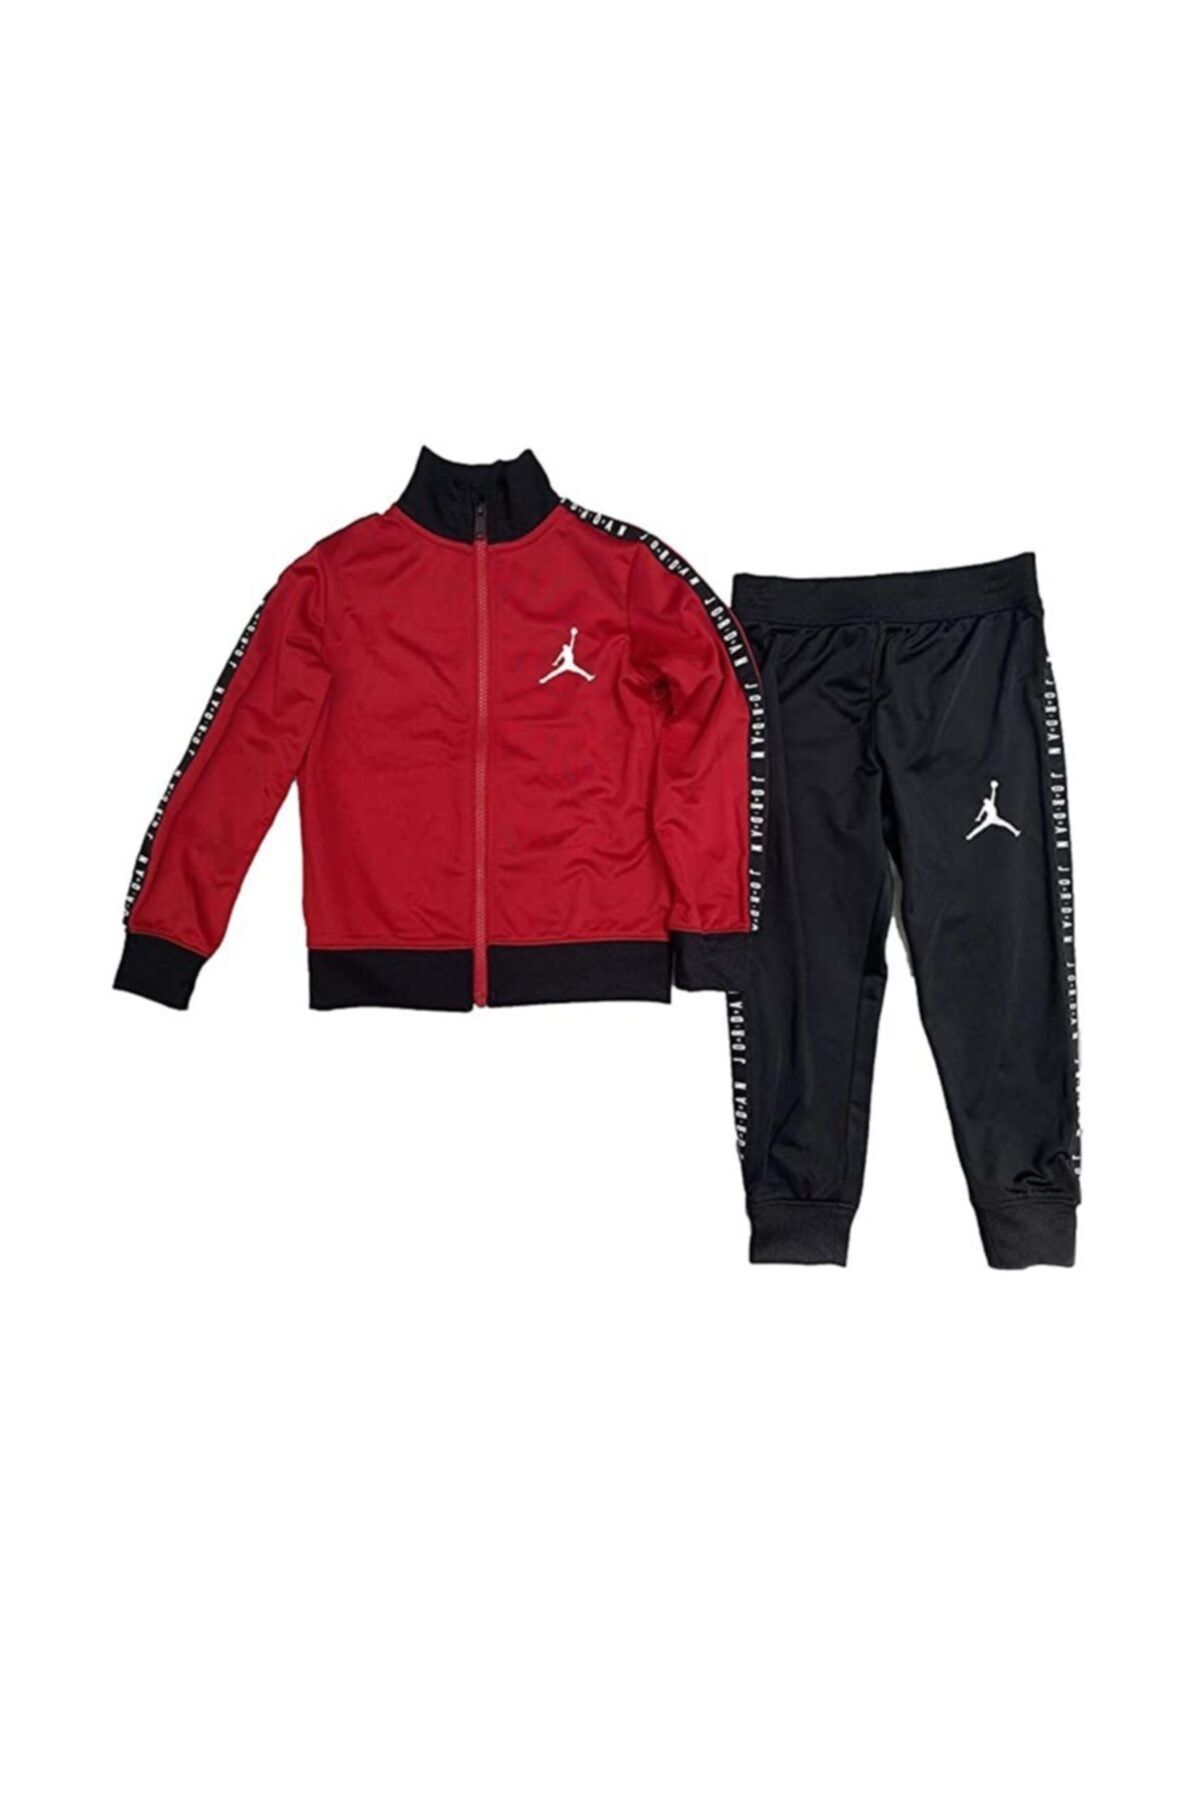 Nike Jorden Jacket And Pants Çocuk Eşofman Takımı